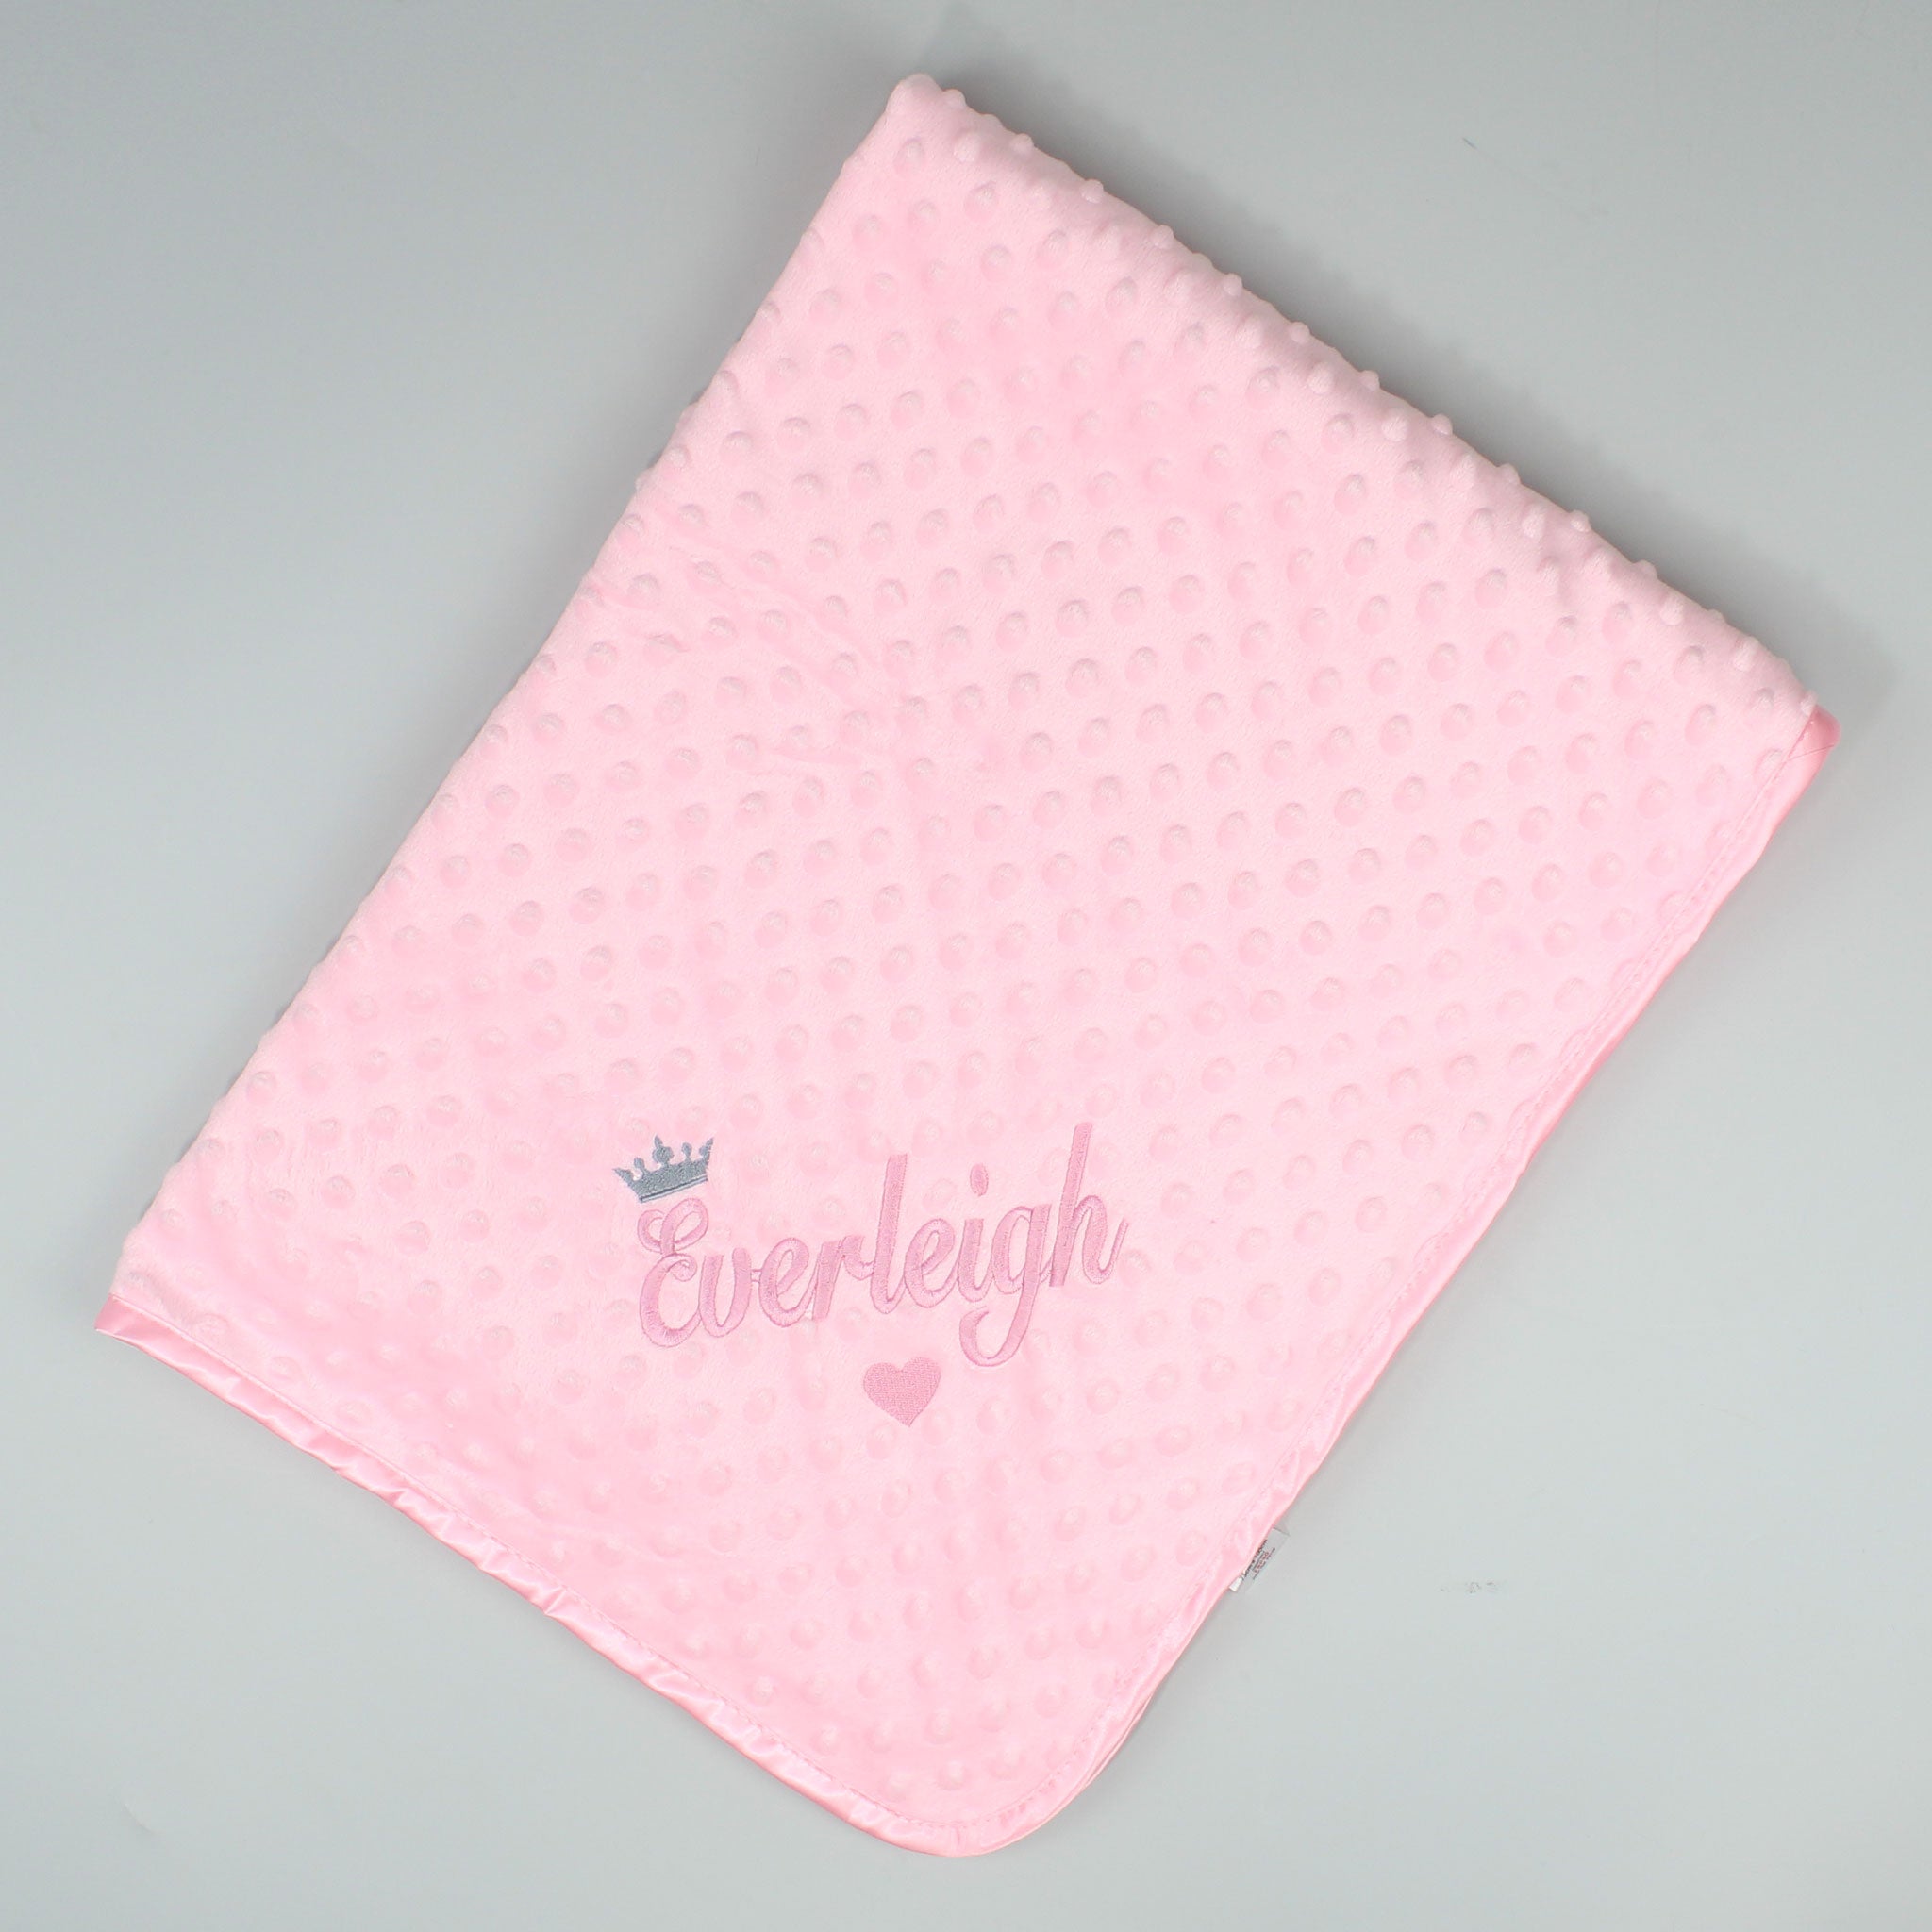 Personalised Baby Blanket - Pink